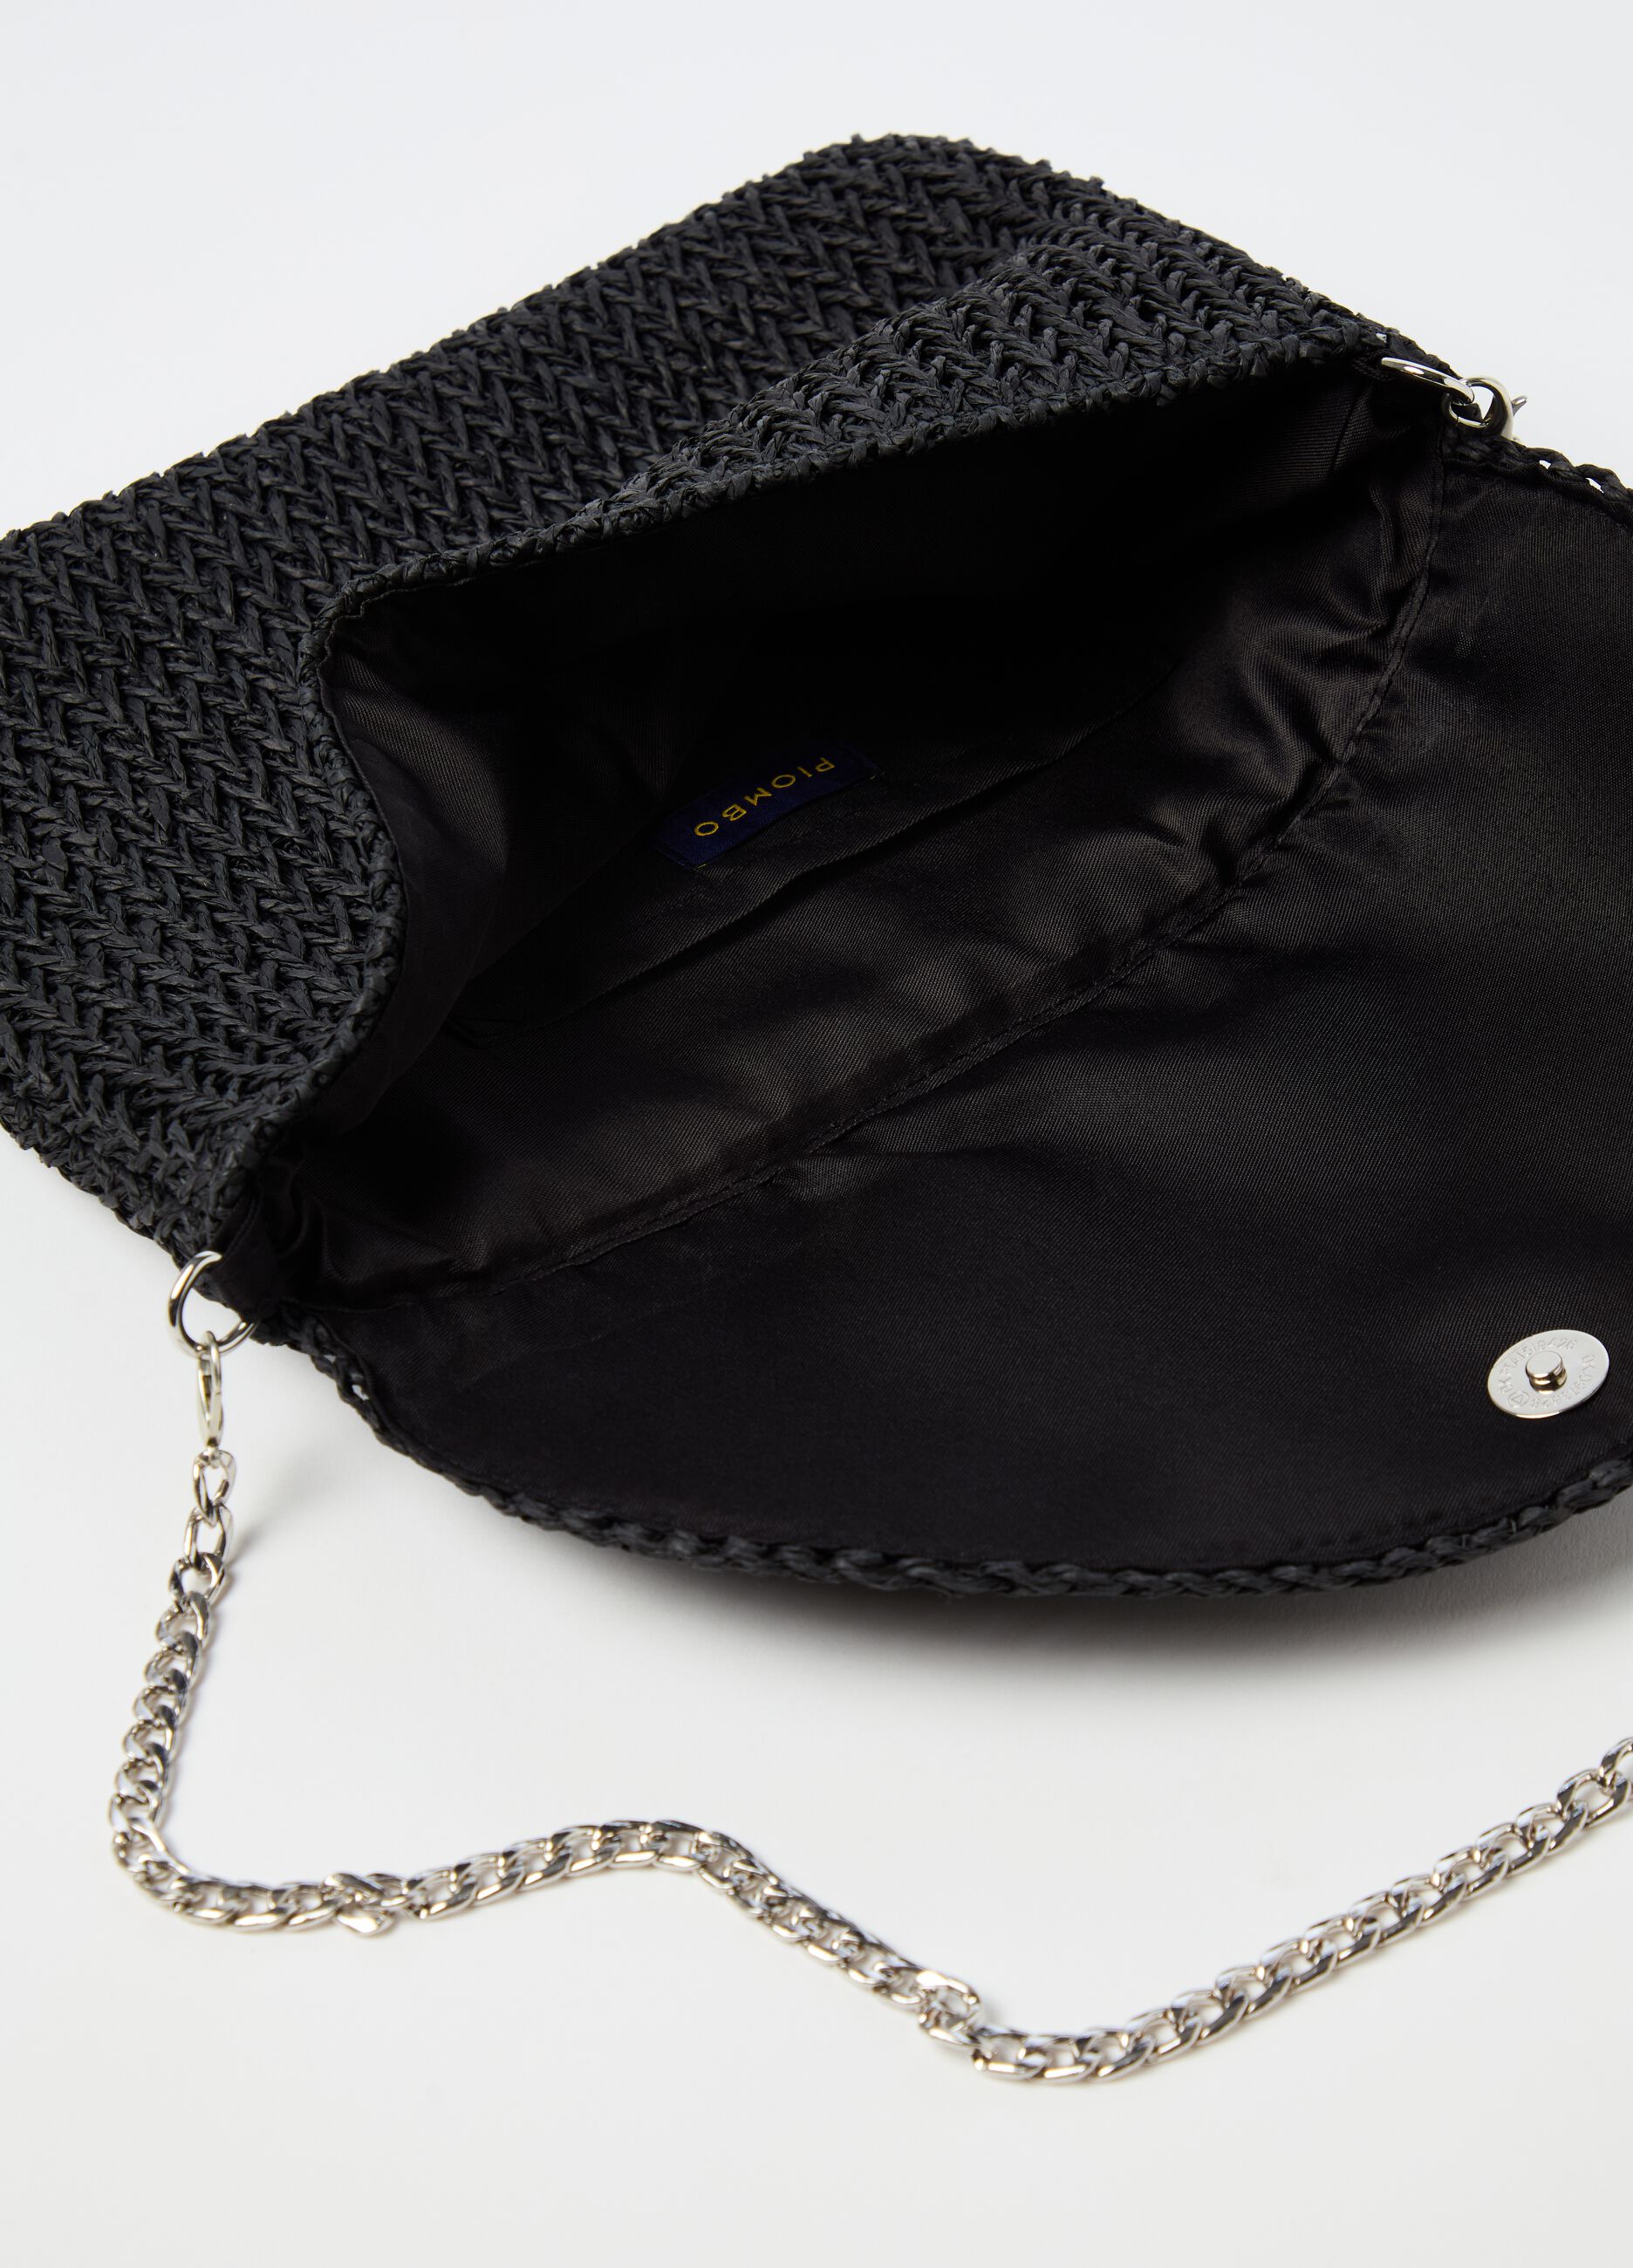 Raffia bag with shoulder strap